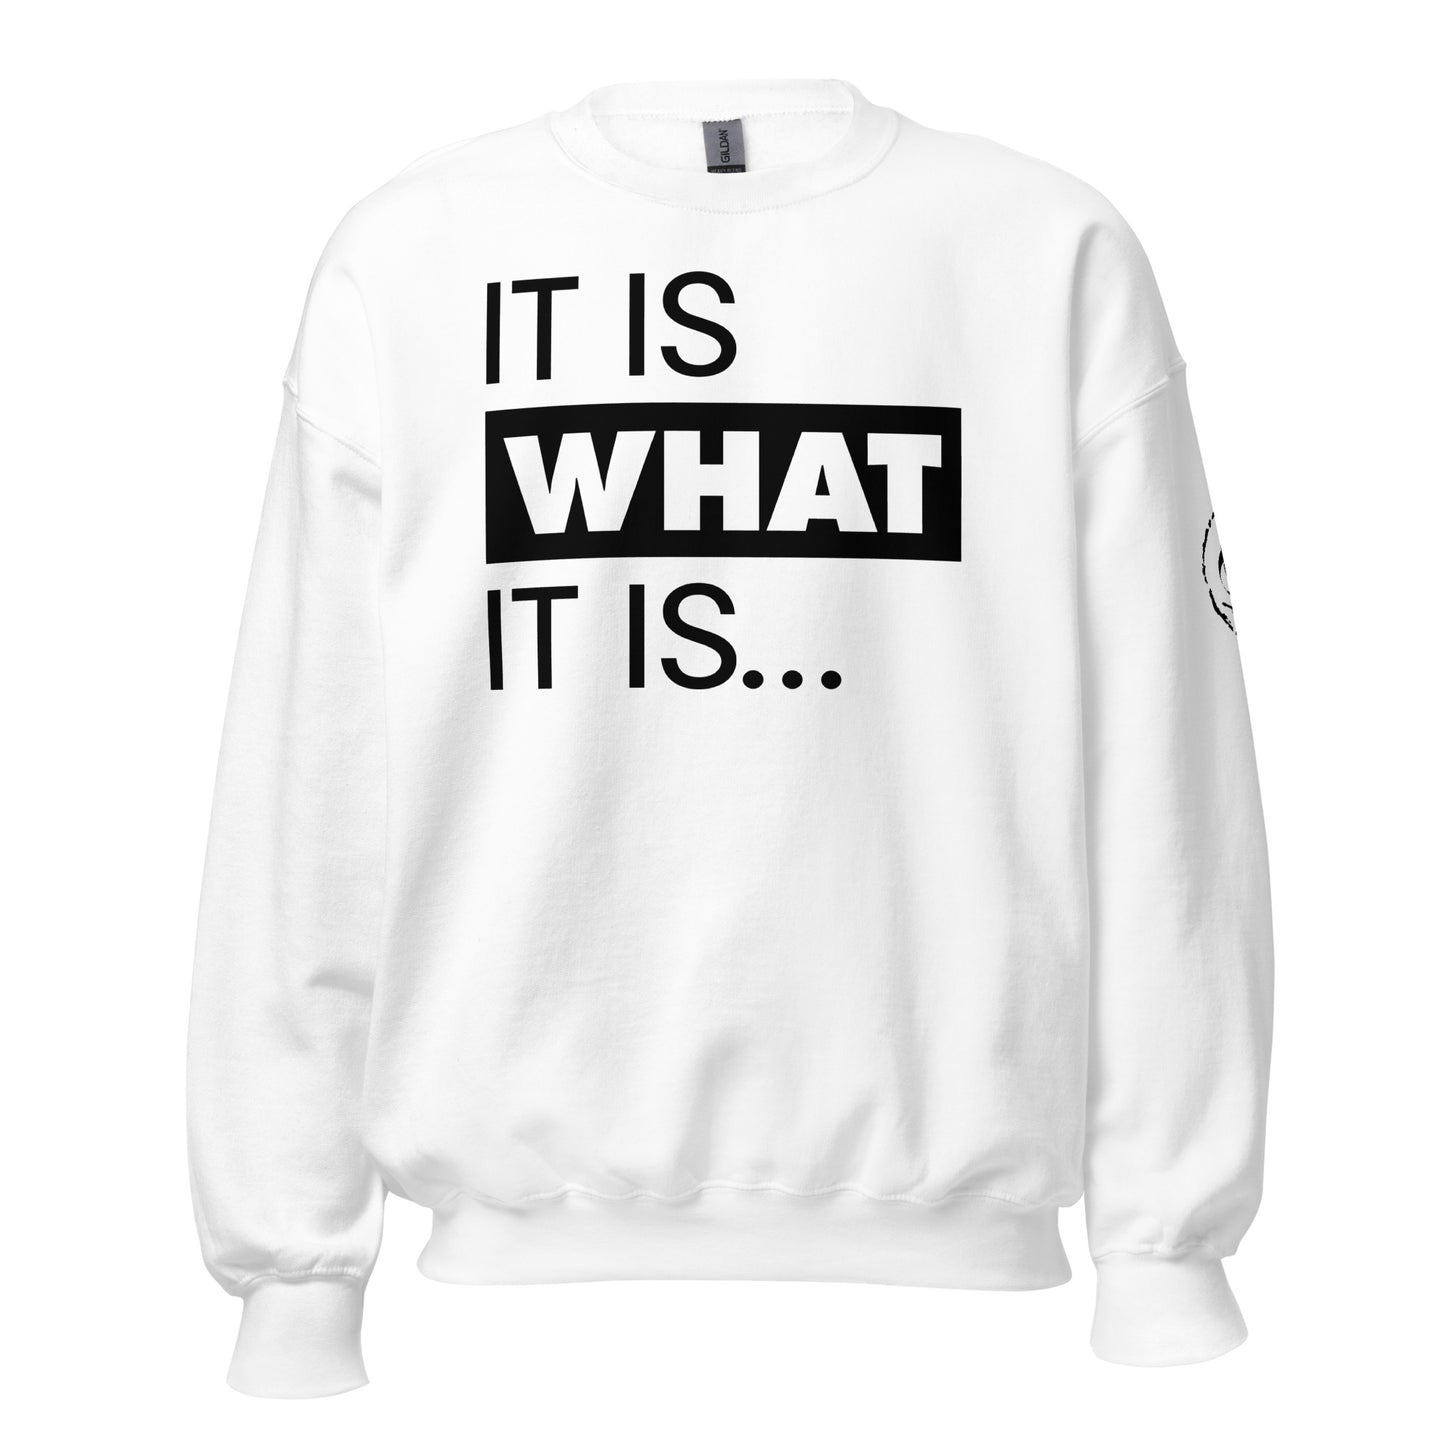 It Is What It Is. Sweatshirt